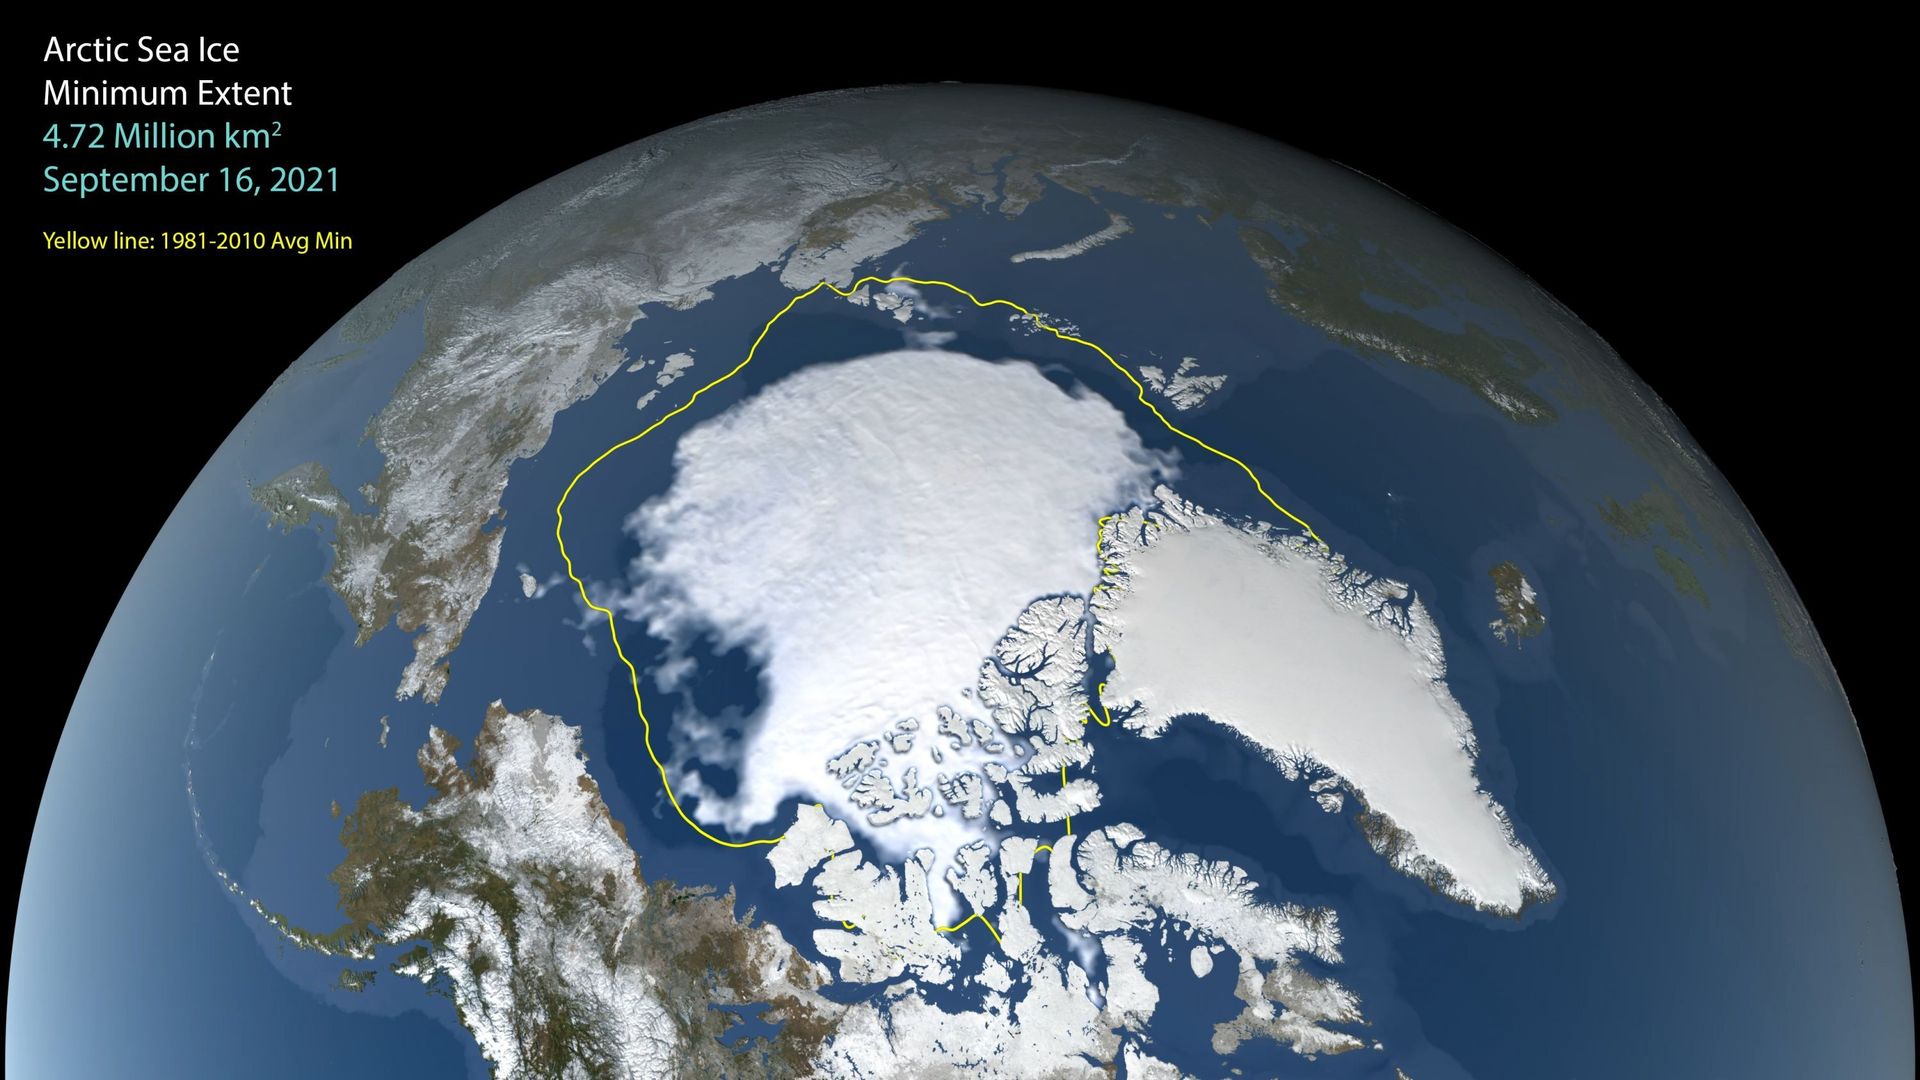 Vue satellite de la taille minimale de glace de mer arctique en 2021, comparée à la surface d’avant 2010 (en jaune).